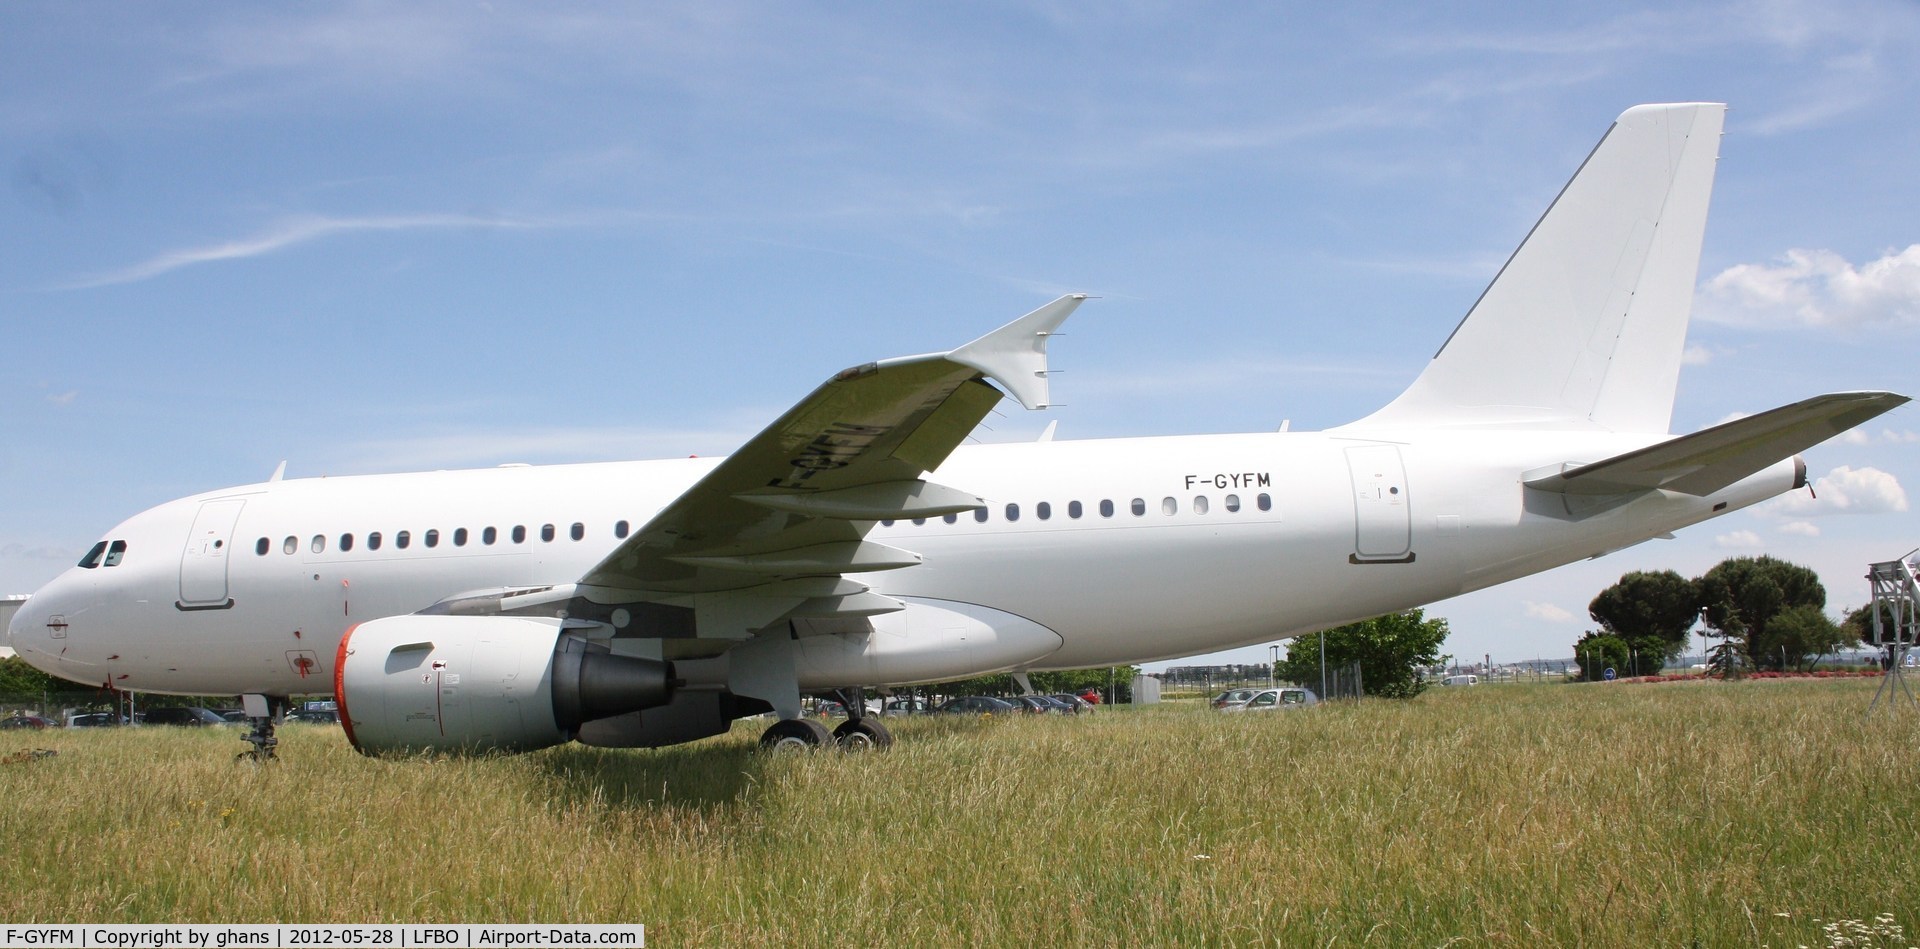 F-GYFM, 1999 Airbus A319-112 C/N 1068, Parked at TLS